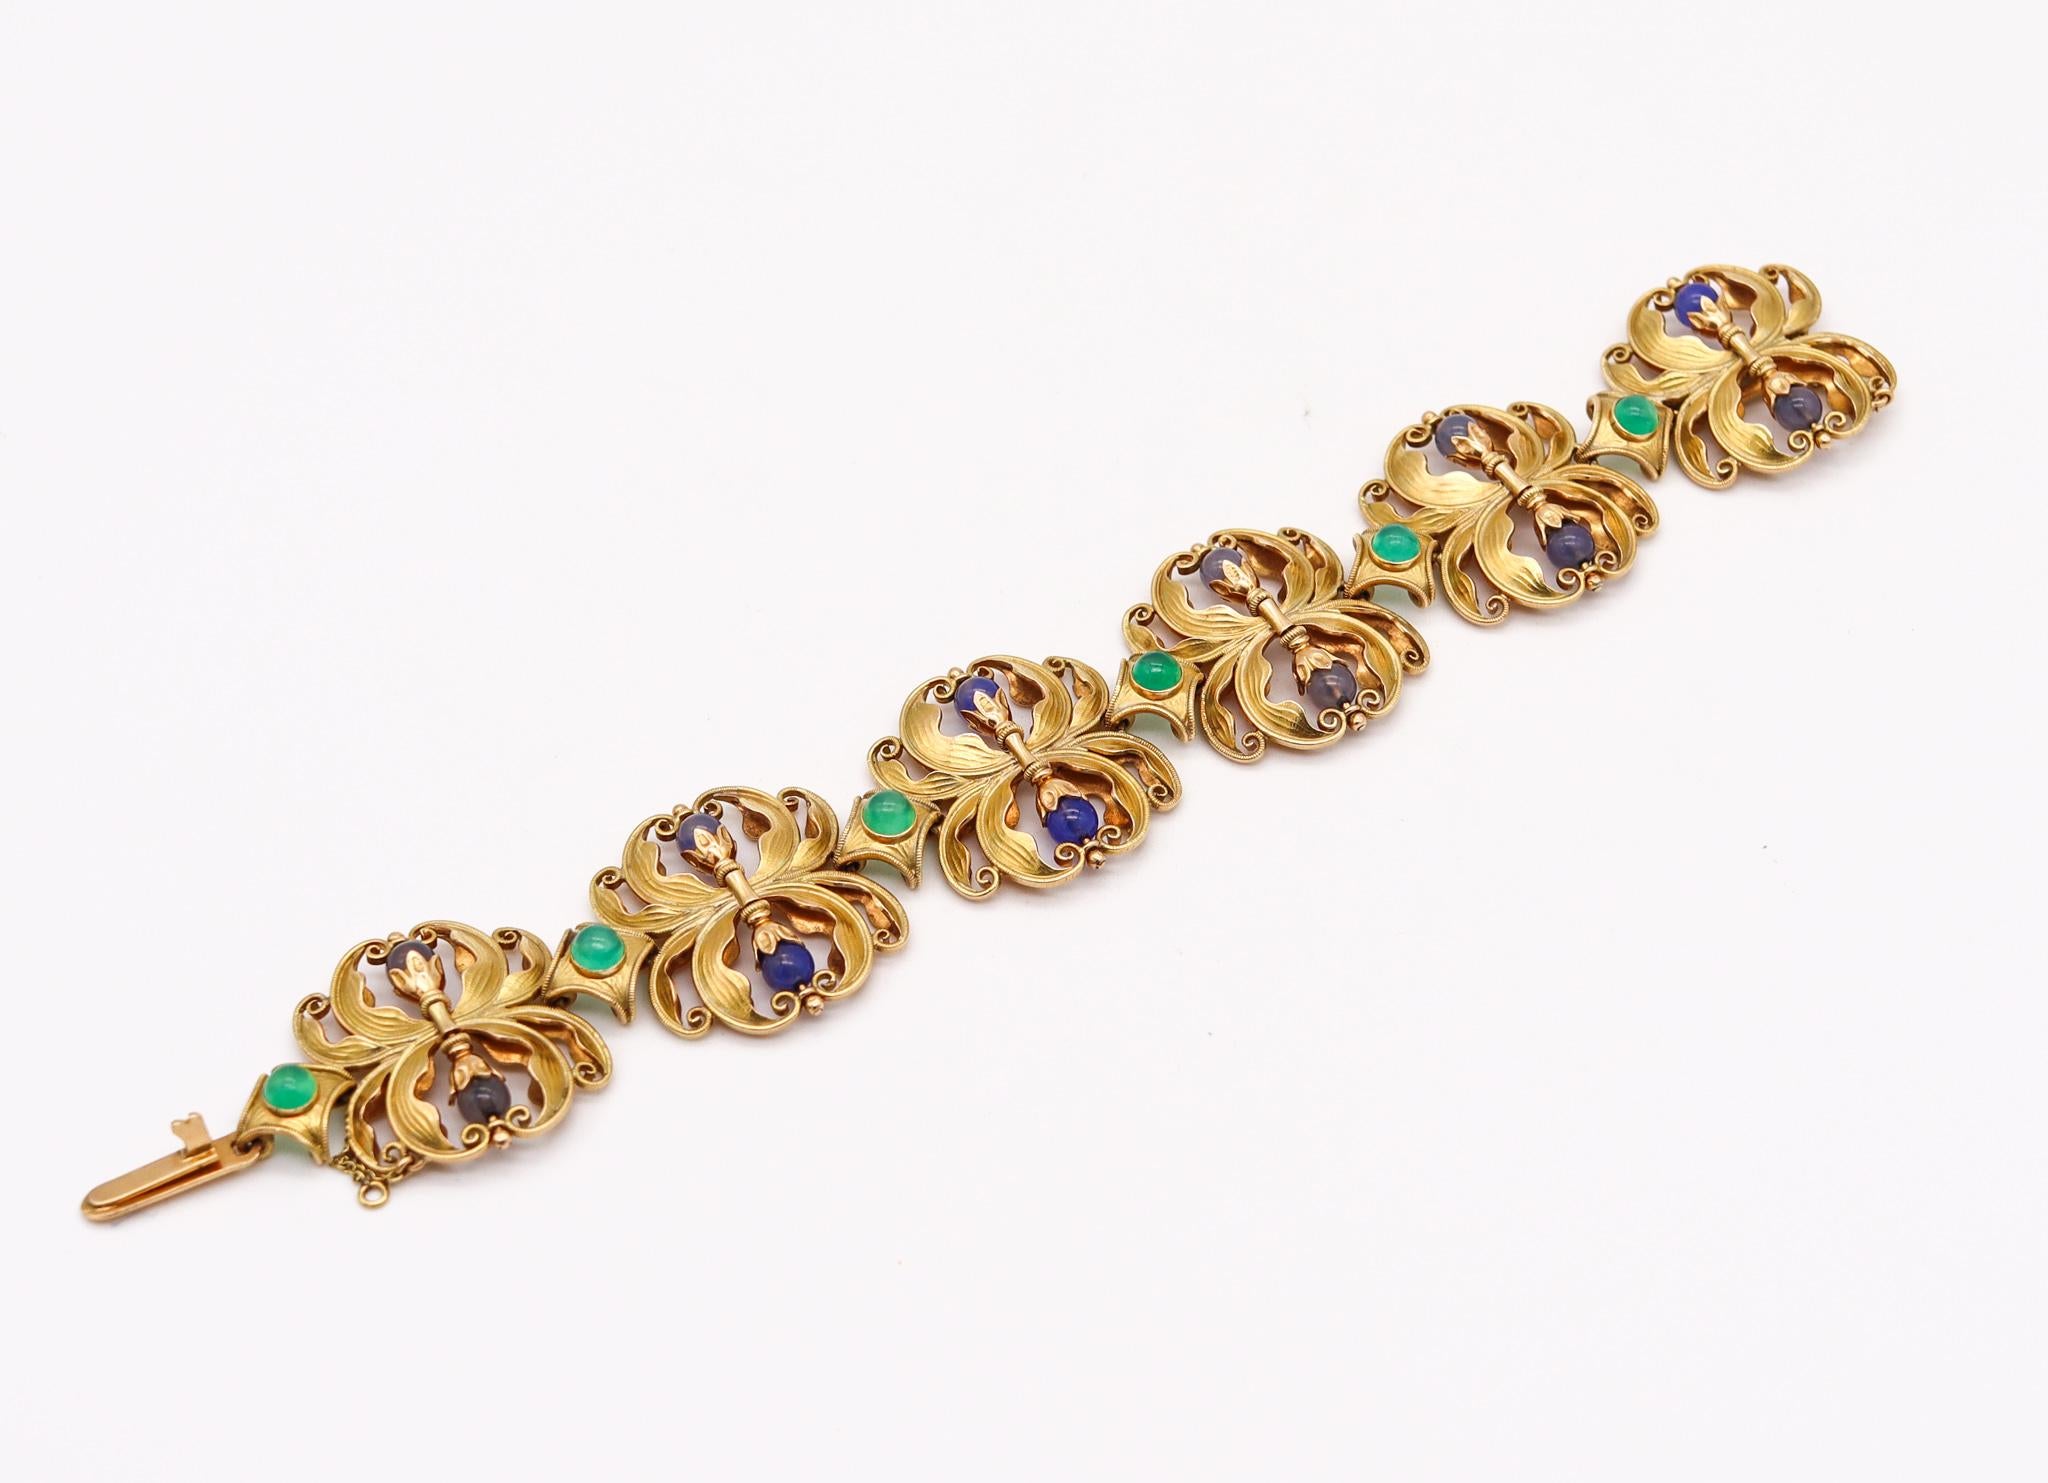 Bracelet art nouveau autrichien avec pierres précieuses.

Bracelet d'une beauté exceptionnelle, créé en Autriche à l'époque de l'art nouveau, dans les années 1890. Ce bracelet flexible a été réalisé avec de magnifiques motifs organiques en or jaune